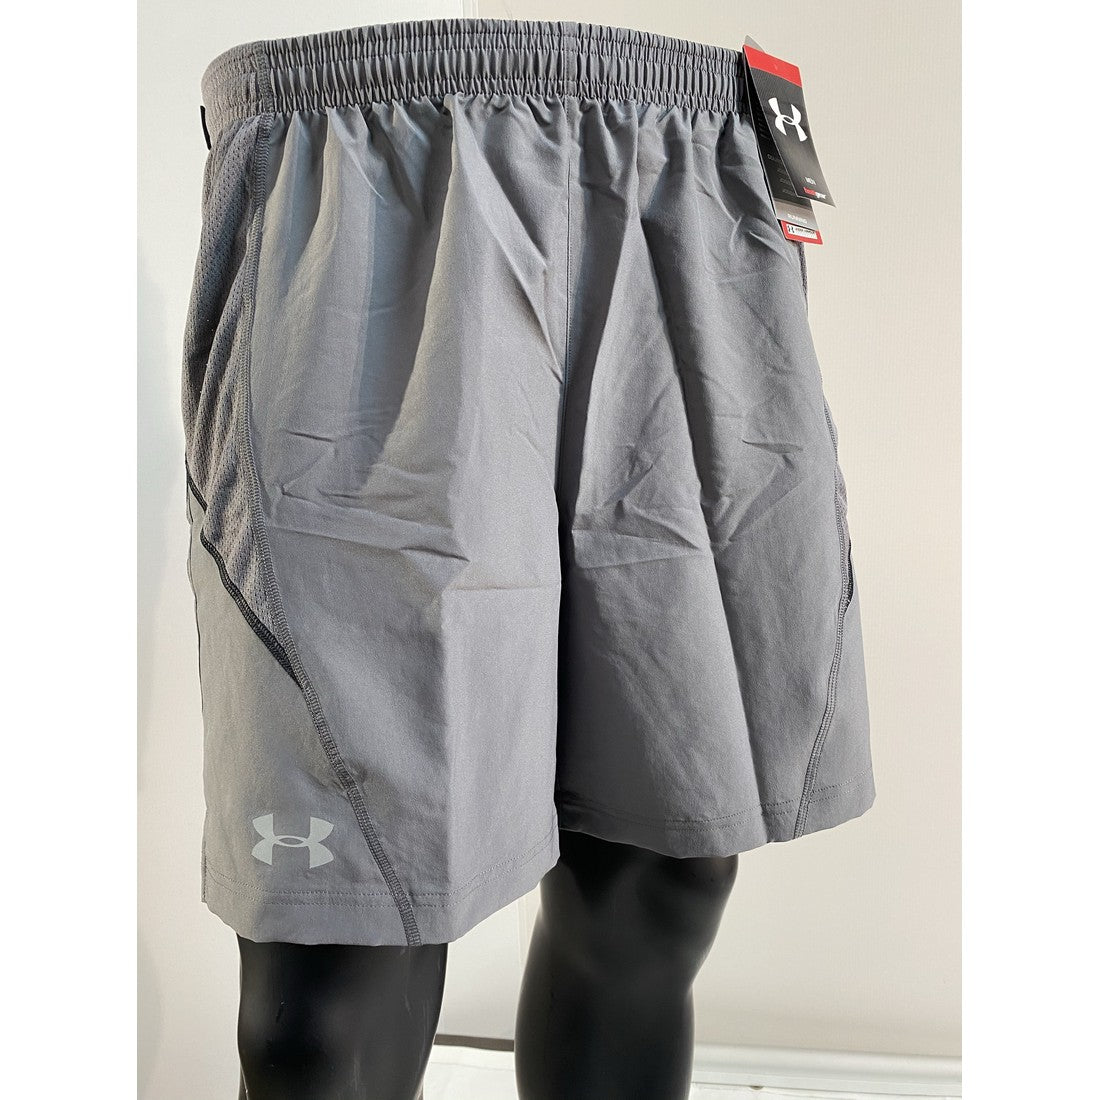 Pantalon corto (Short) Parcer 2.0 para hombre de Under Armour – Liquidación  Marcas